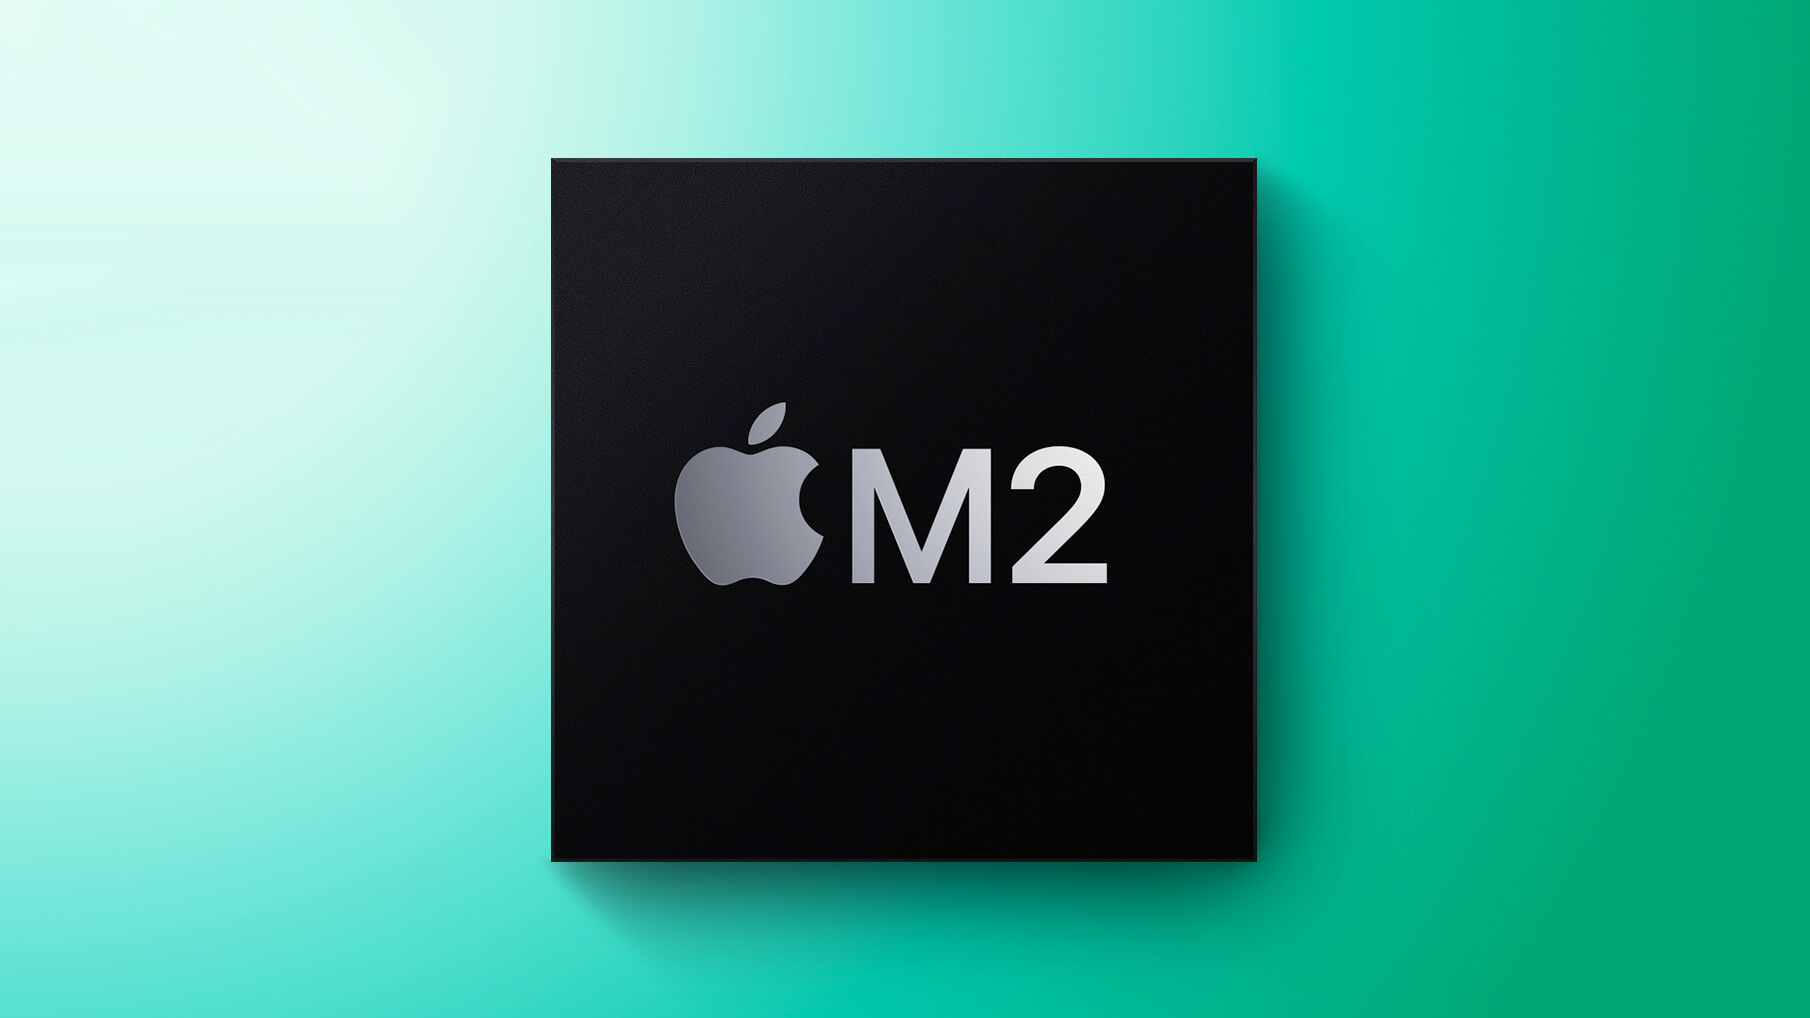 Процессор Apple M2 для новых MacBook уже в производстве